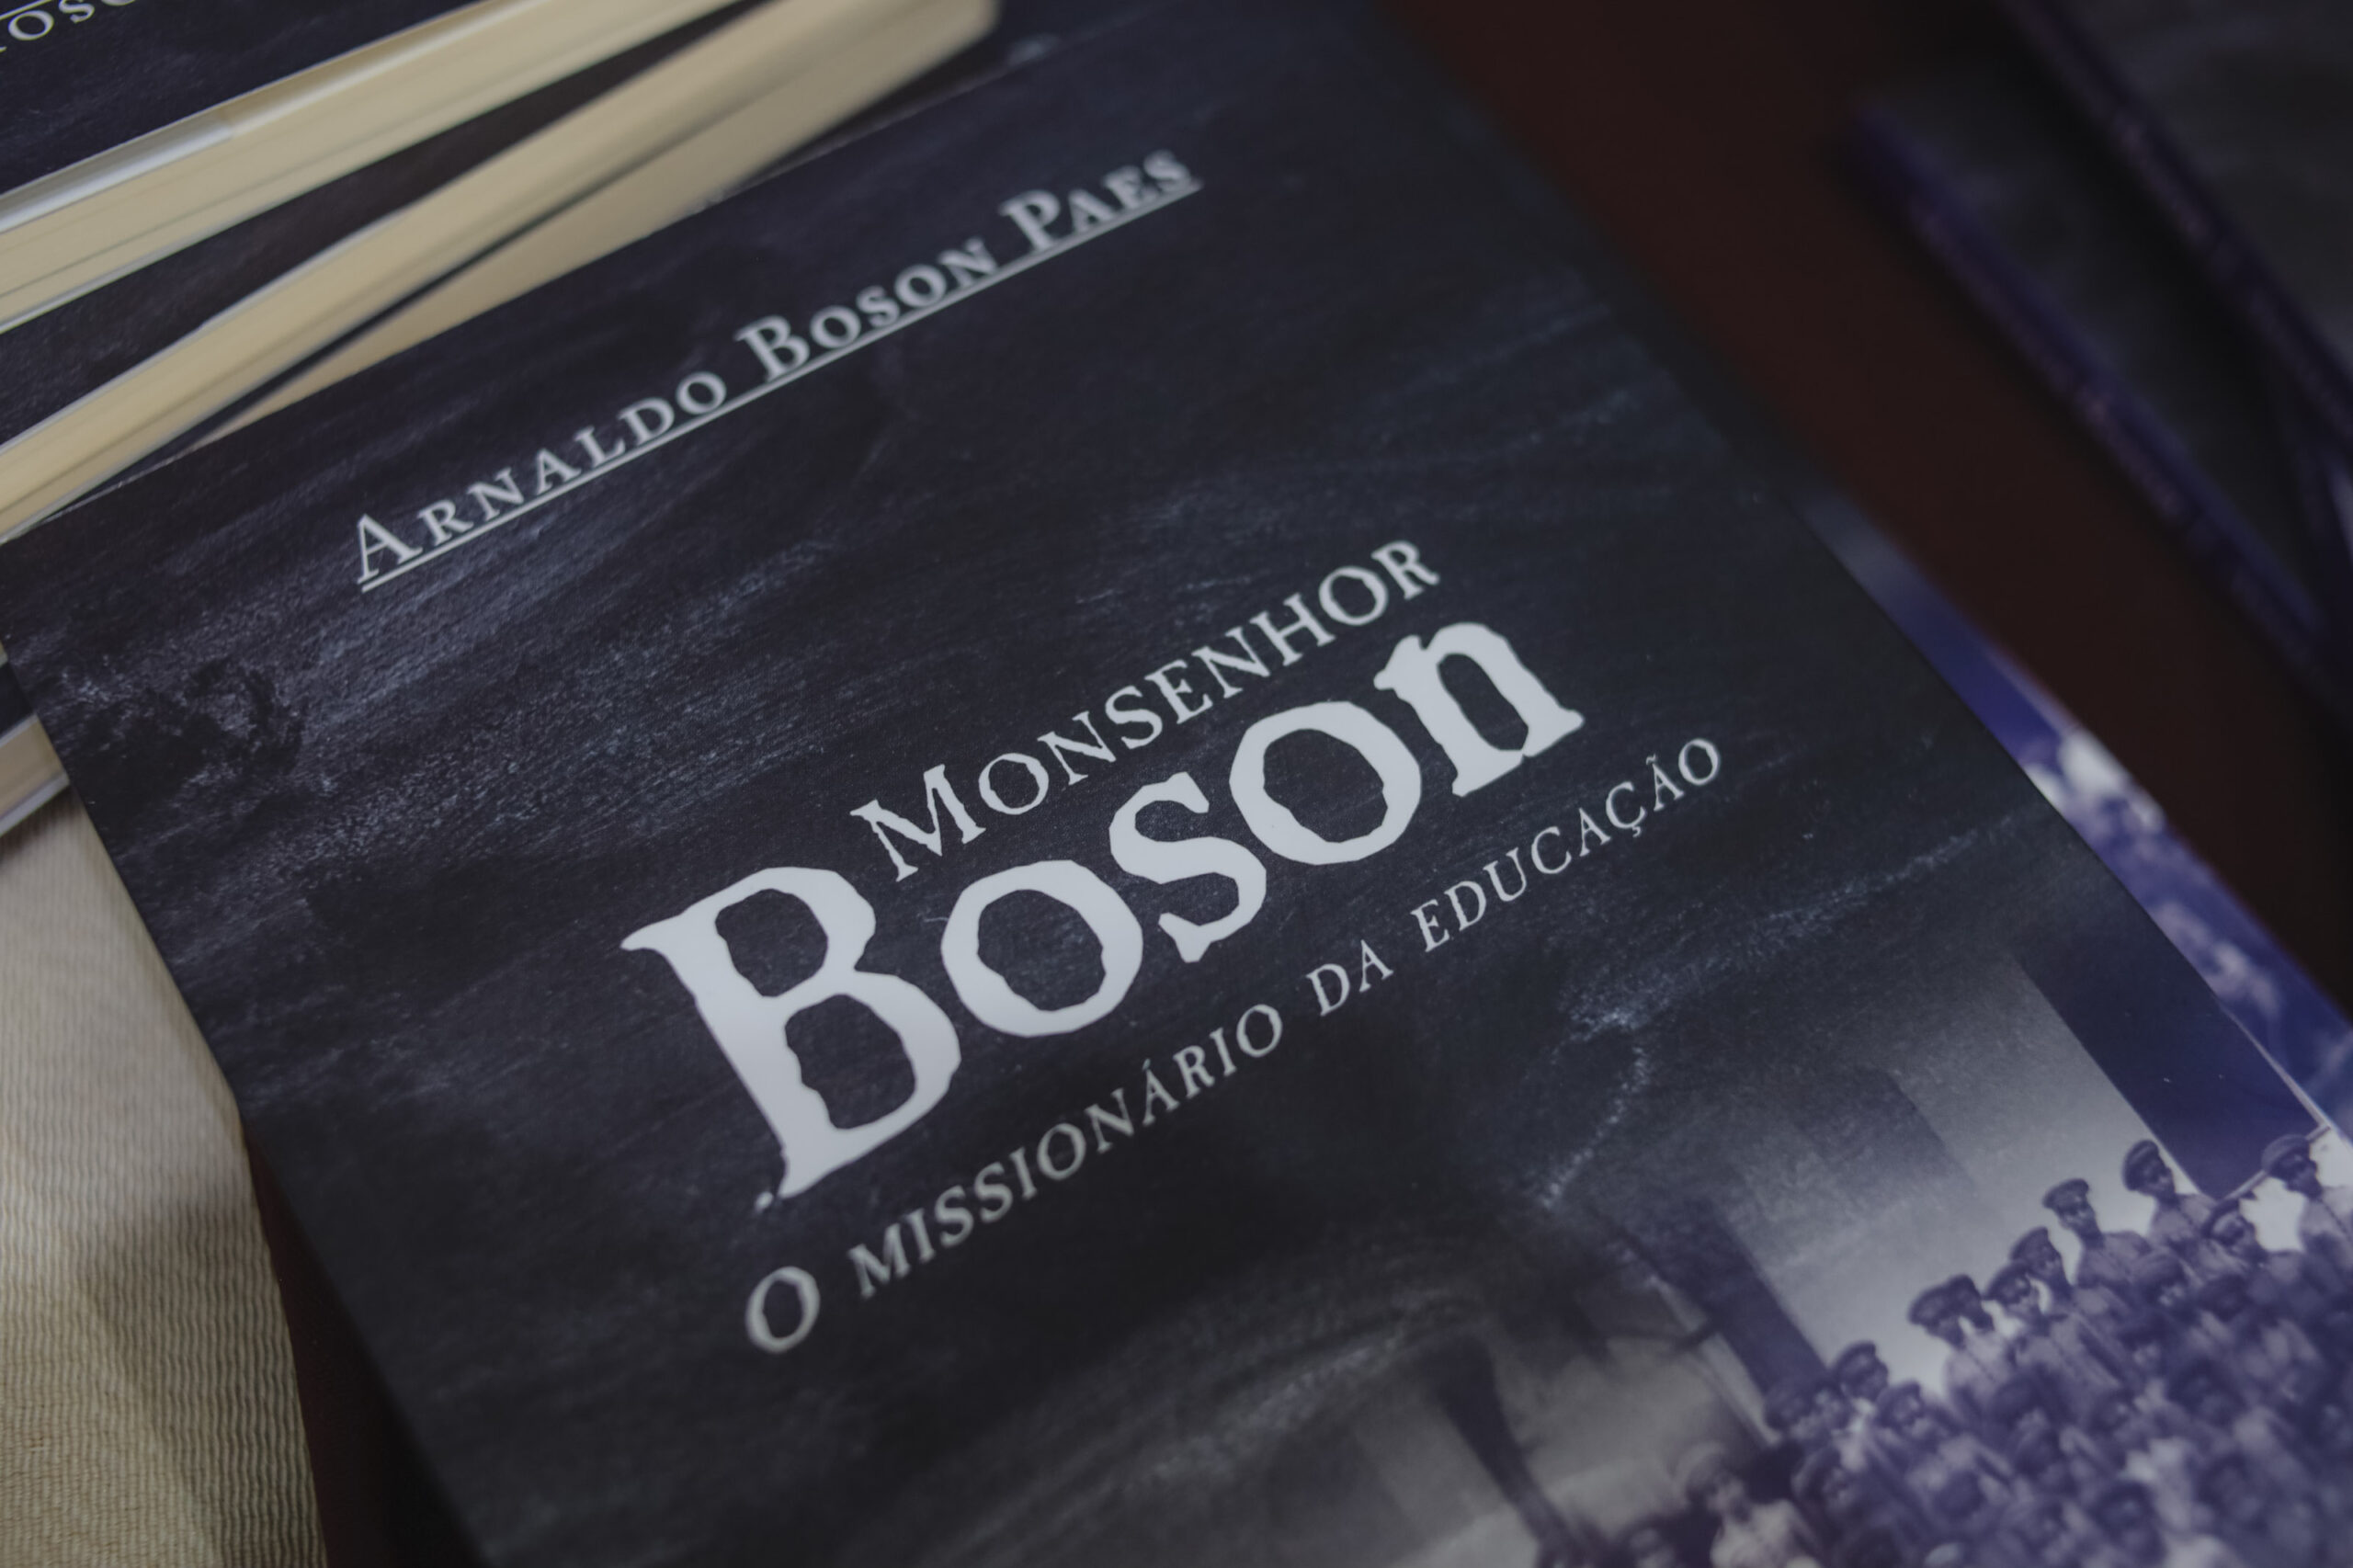 Capa da biografia do Monsenhor Boson.